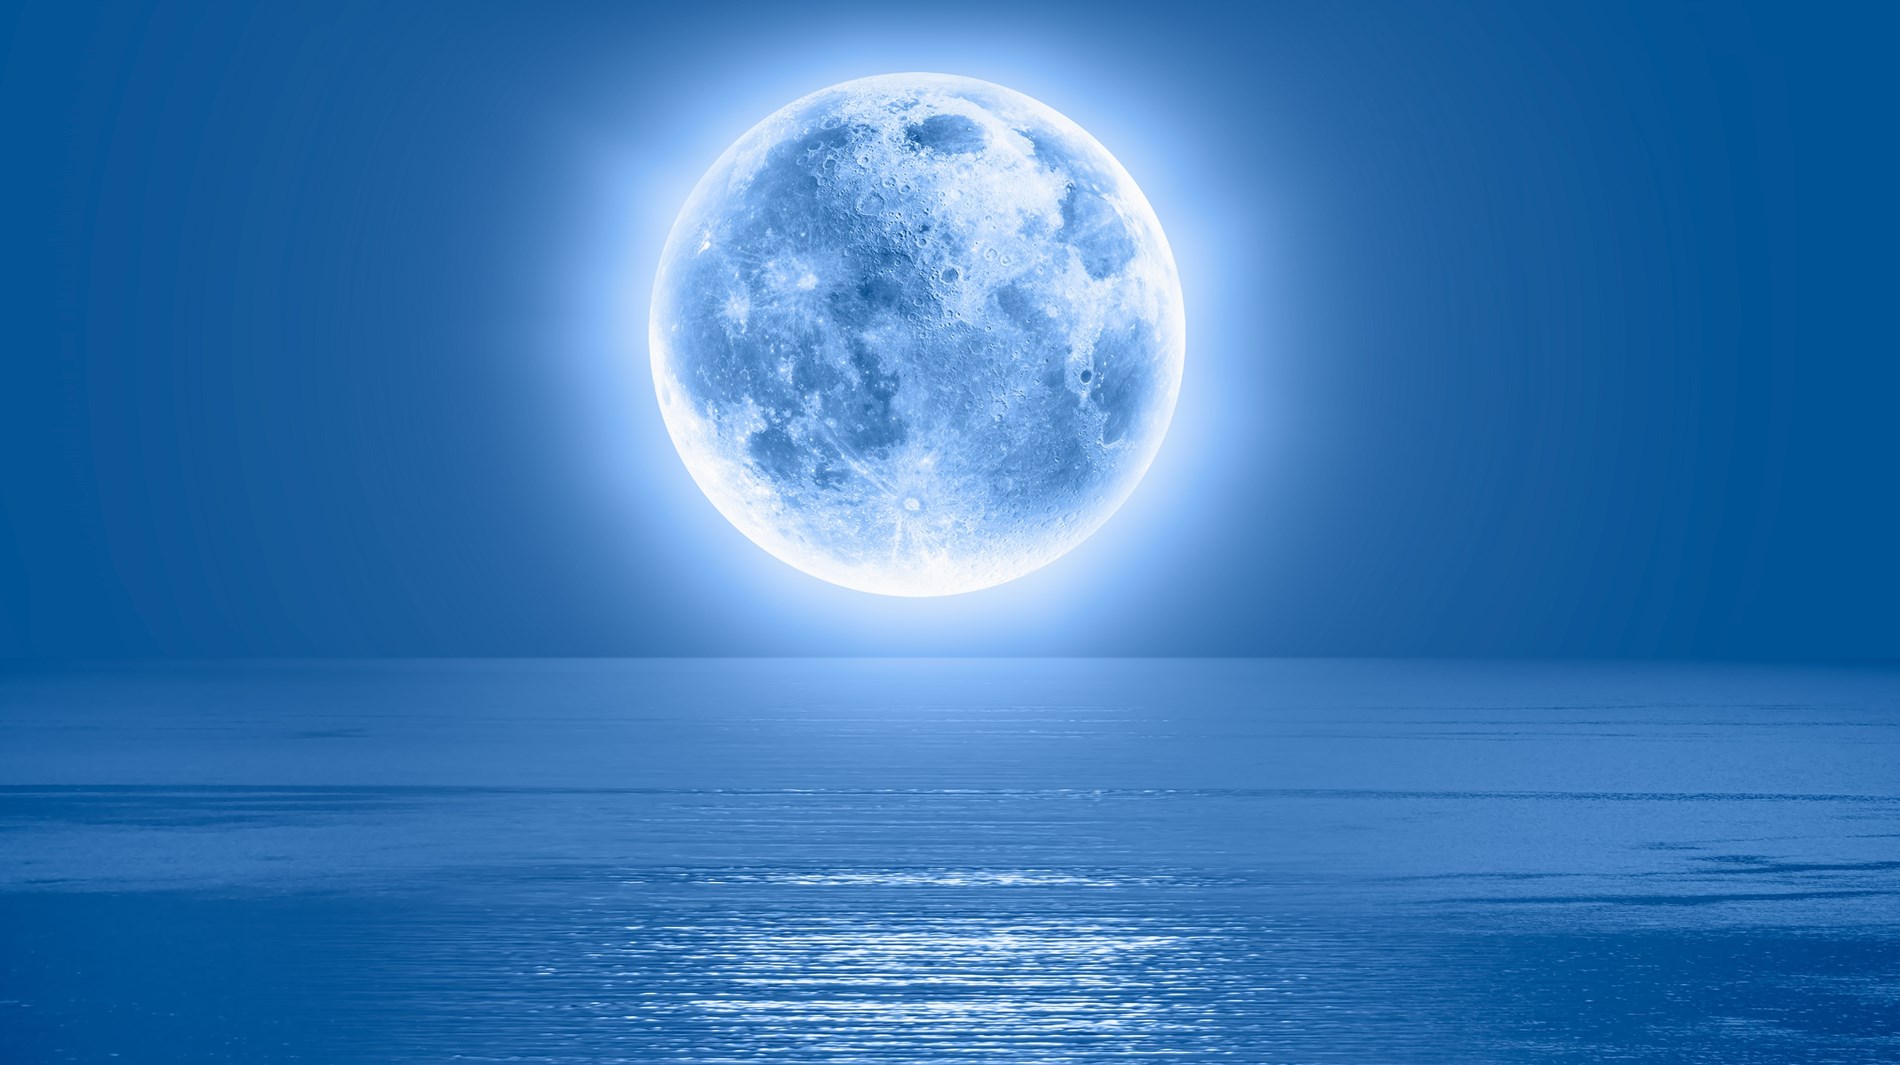 الأرض تستضيف القمر الأزرق.. في هذا التاريخ!
